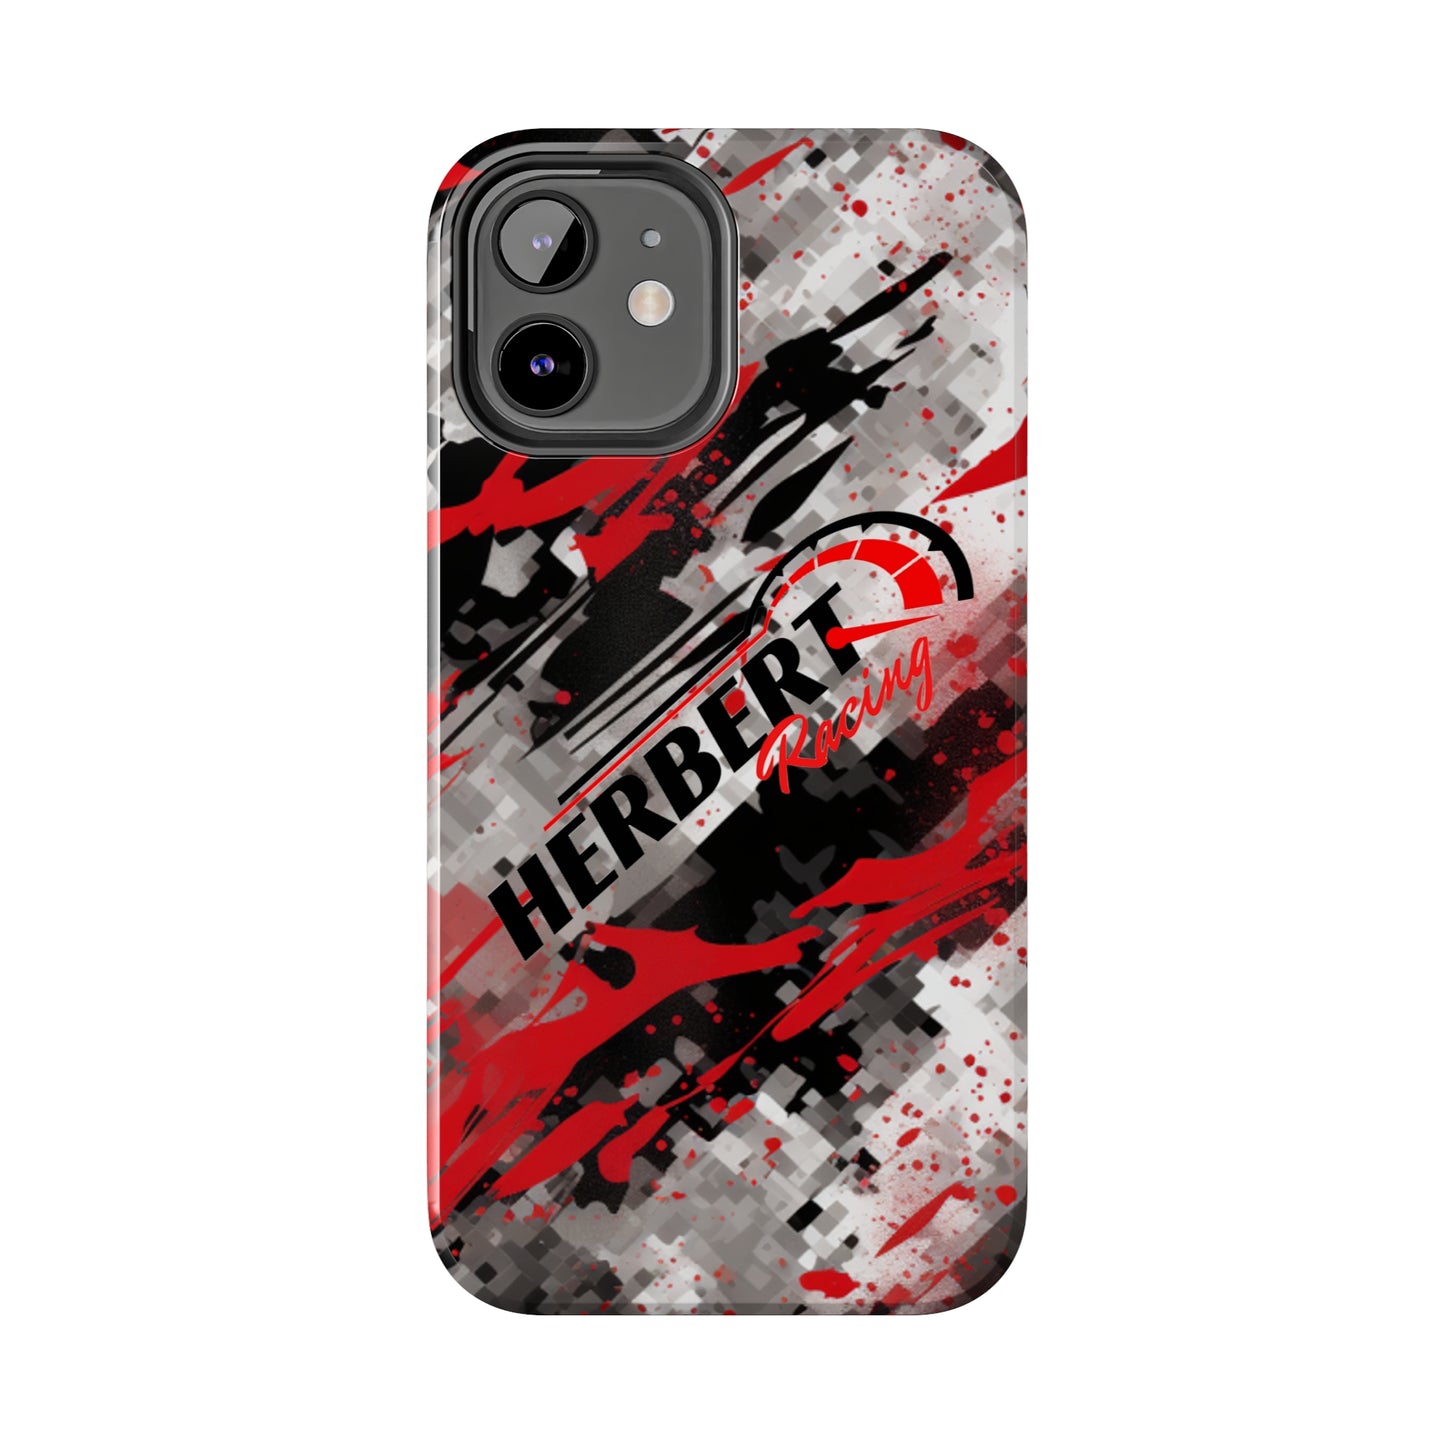 Herbert Racing iPhone Hard Case